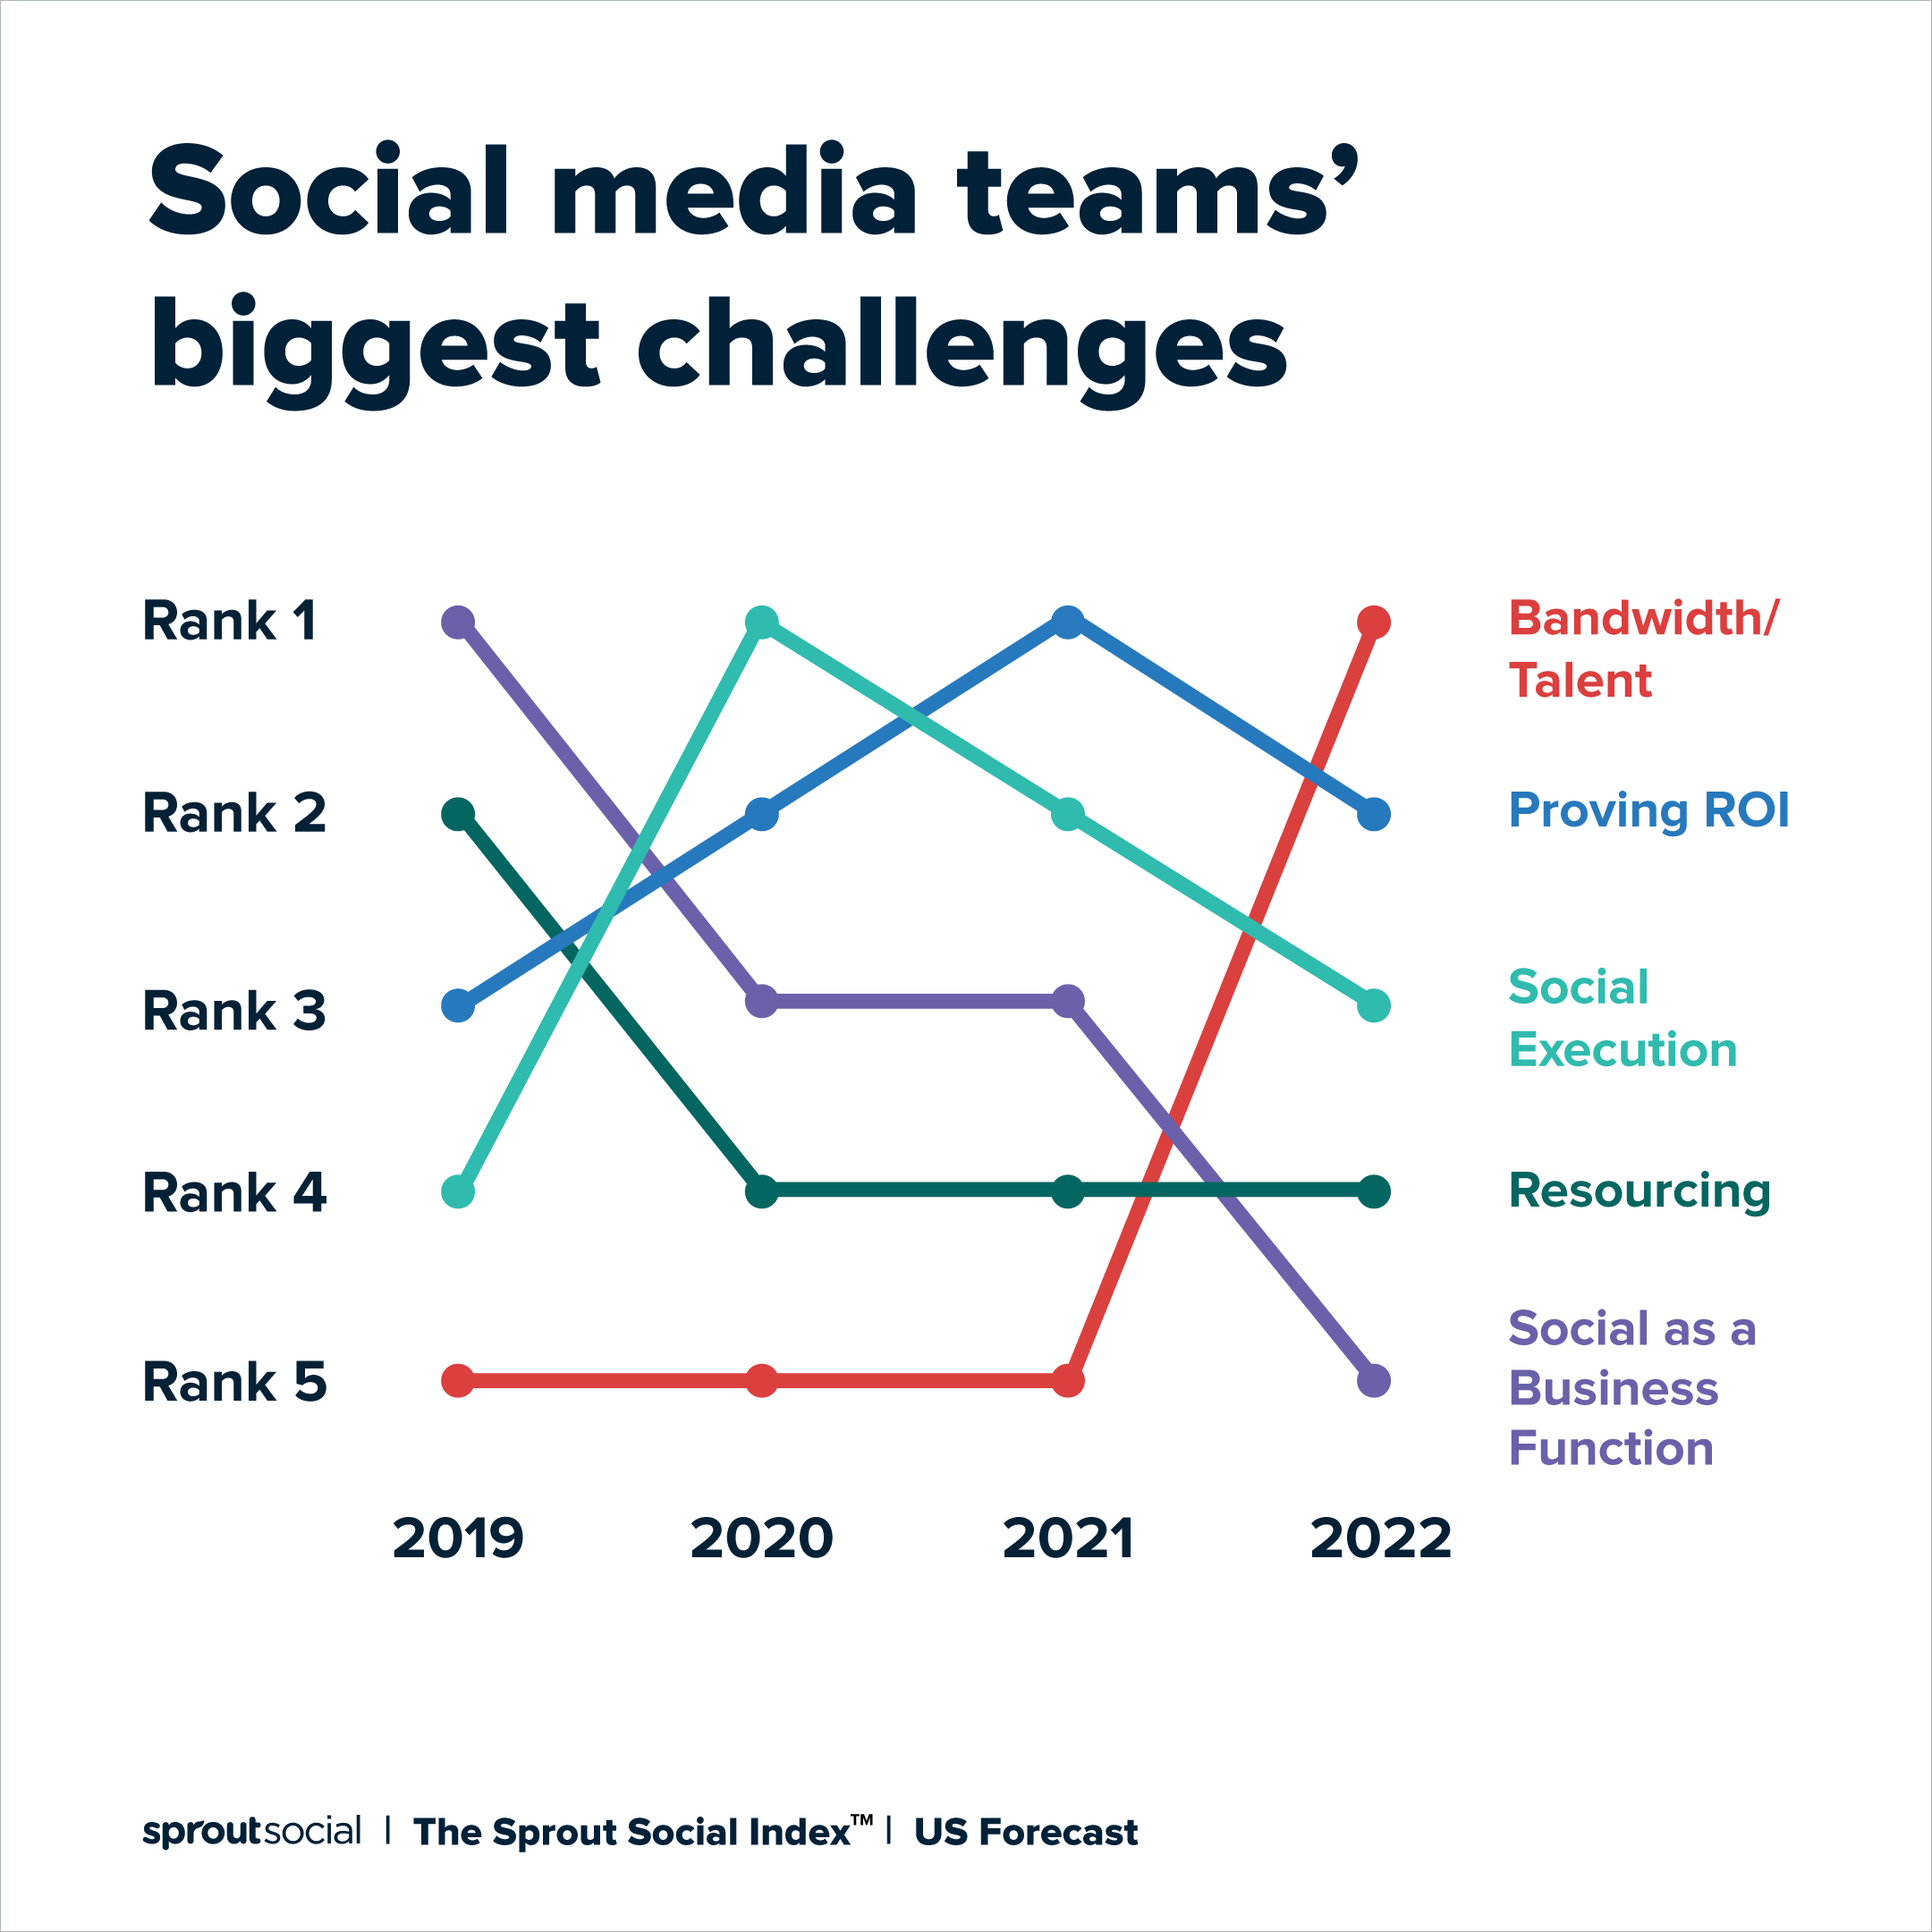 نموداری که بزرگترین چالش های تیم های رسانه های اجتماعی را نشان می دهد.  در سال 2022، پهنای باند و استعداد به چالش های اصلی تبدیل شدند. 